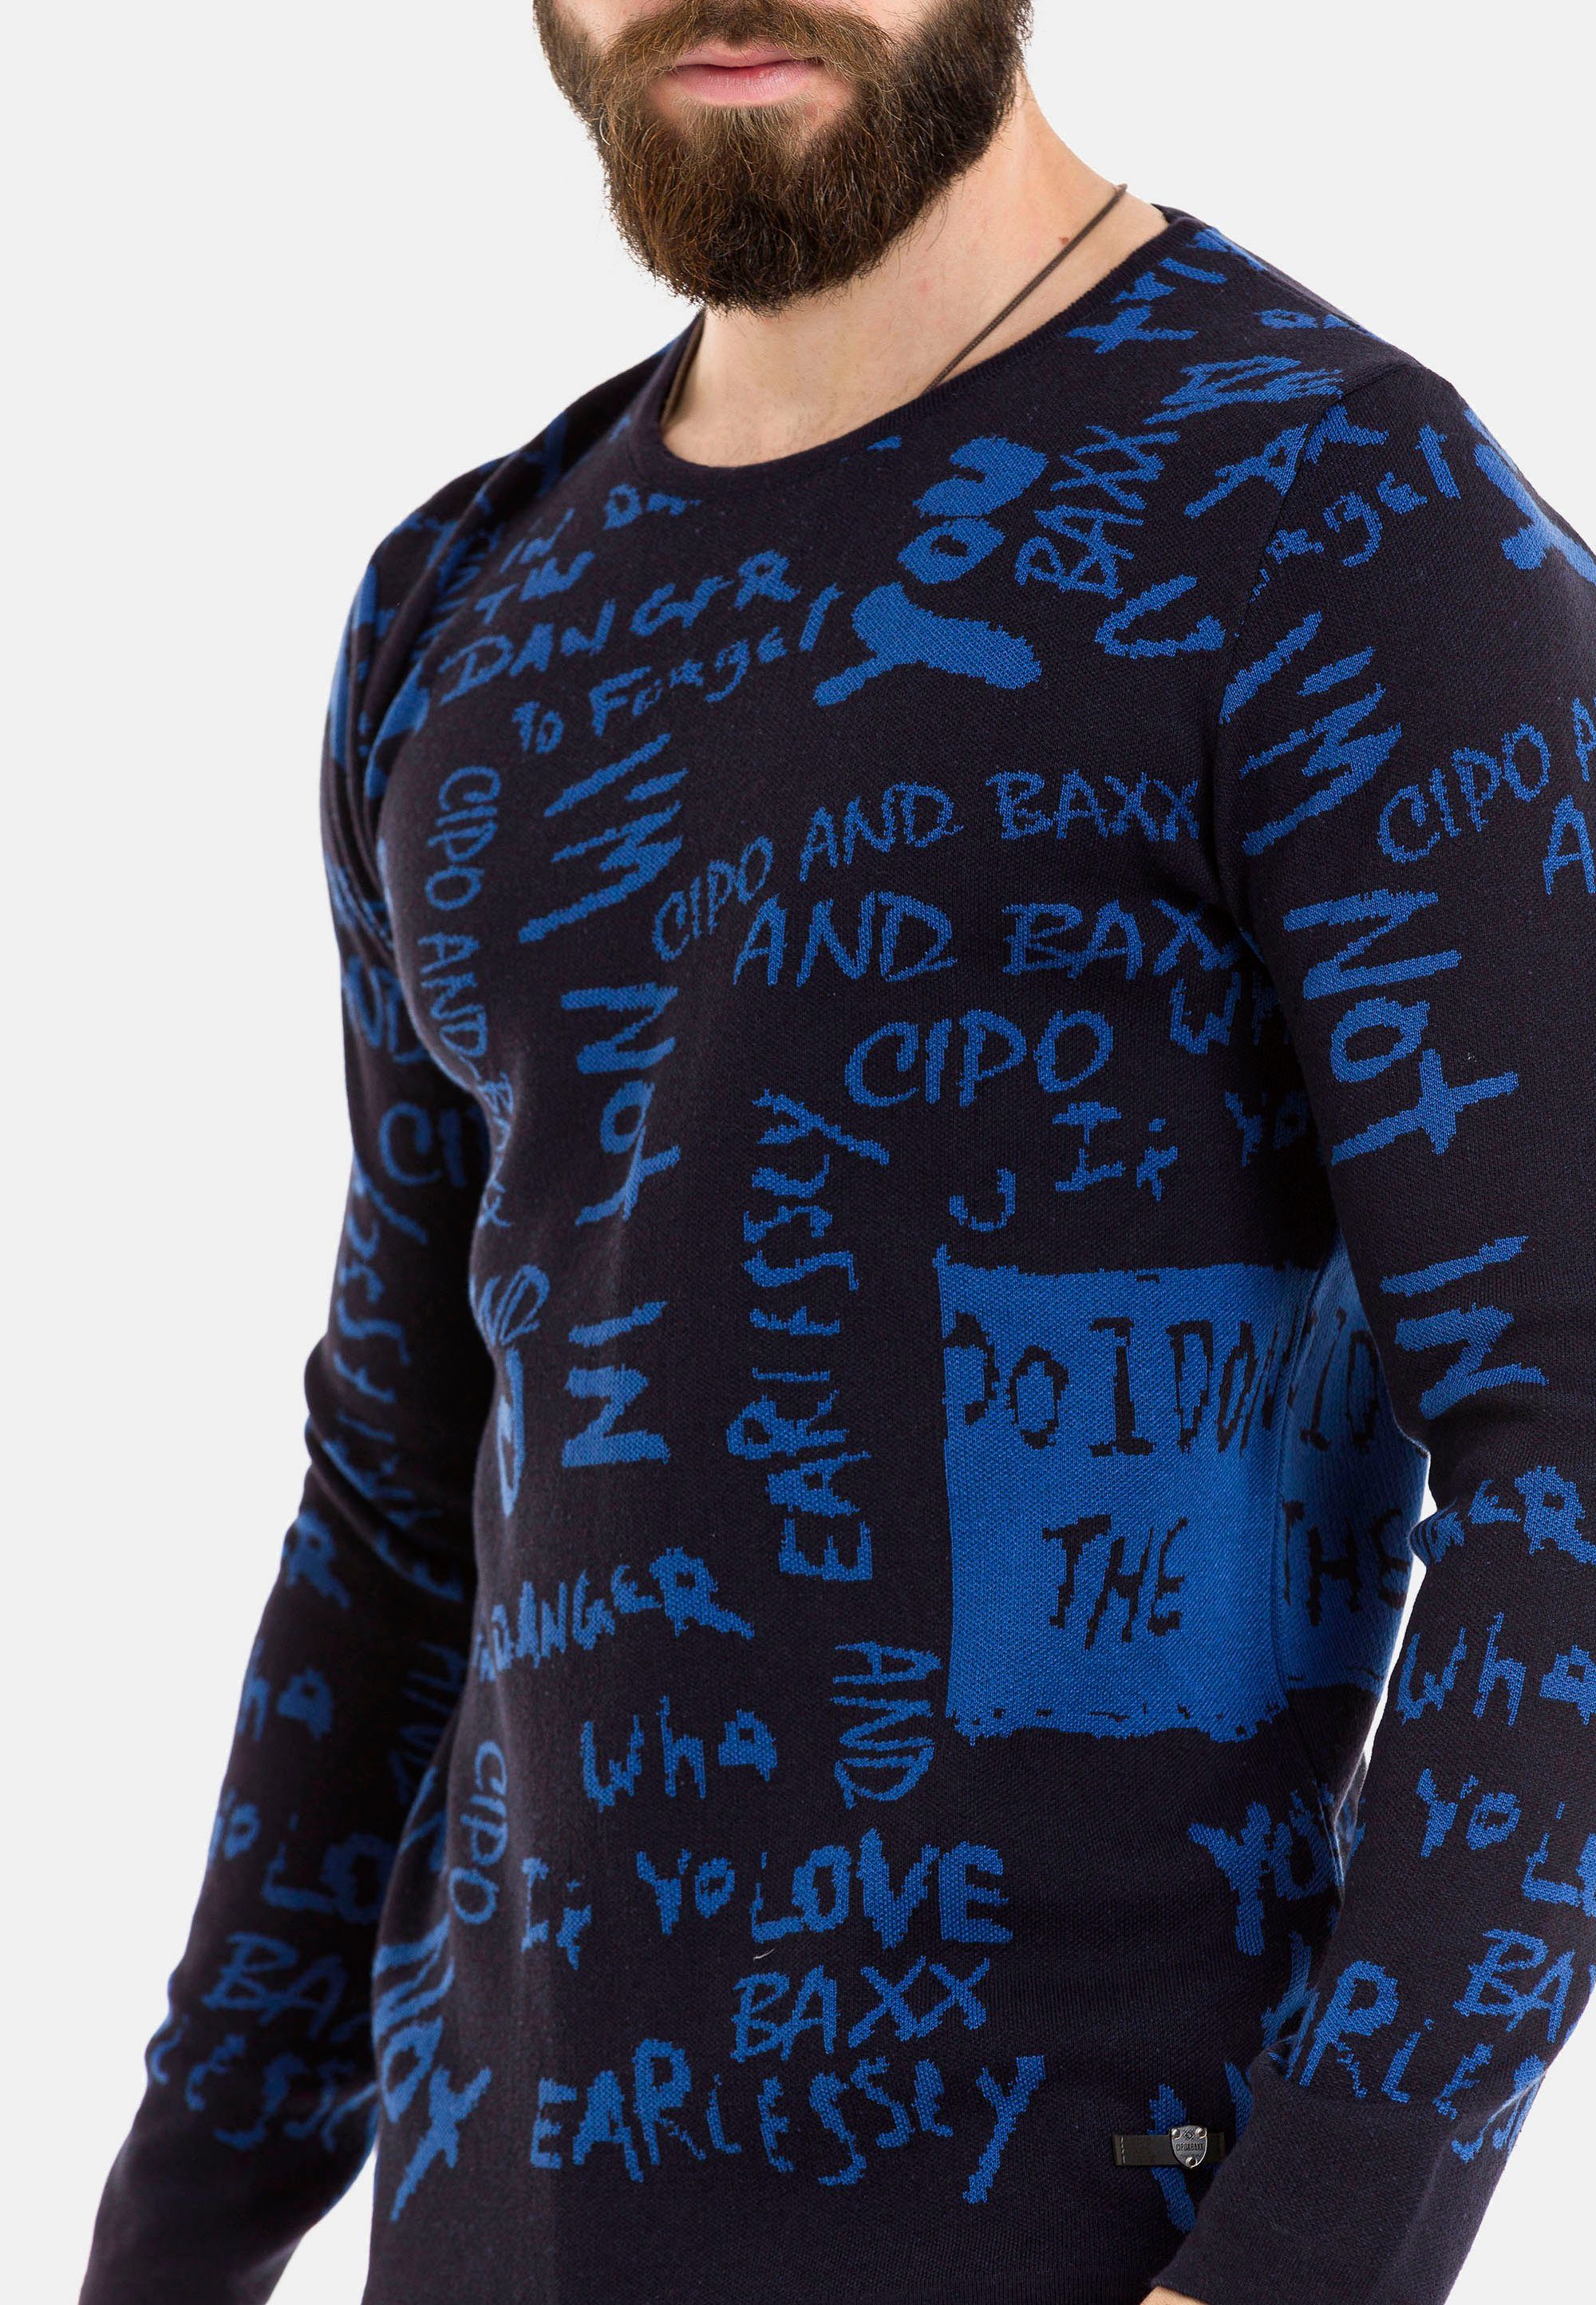 Baxx Schriftzug-Design & Cipo trendigem Strickpullover blau mit